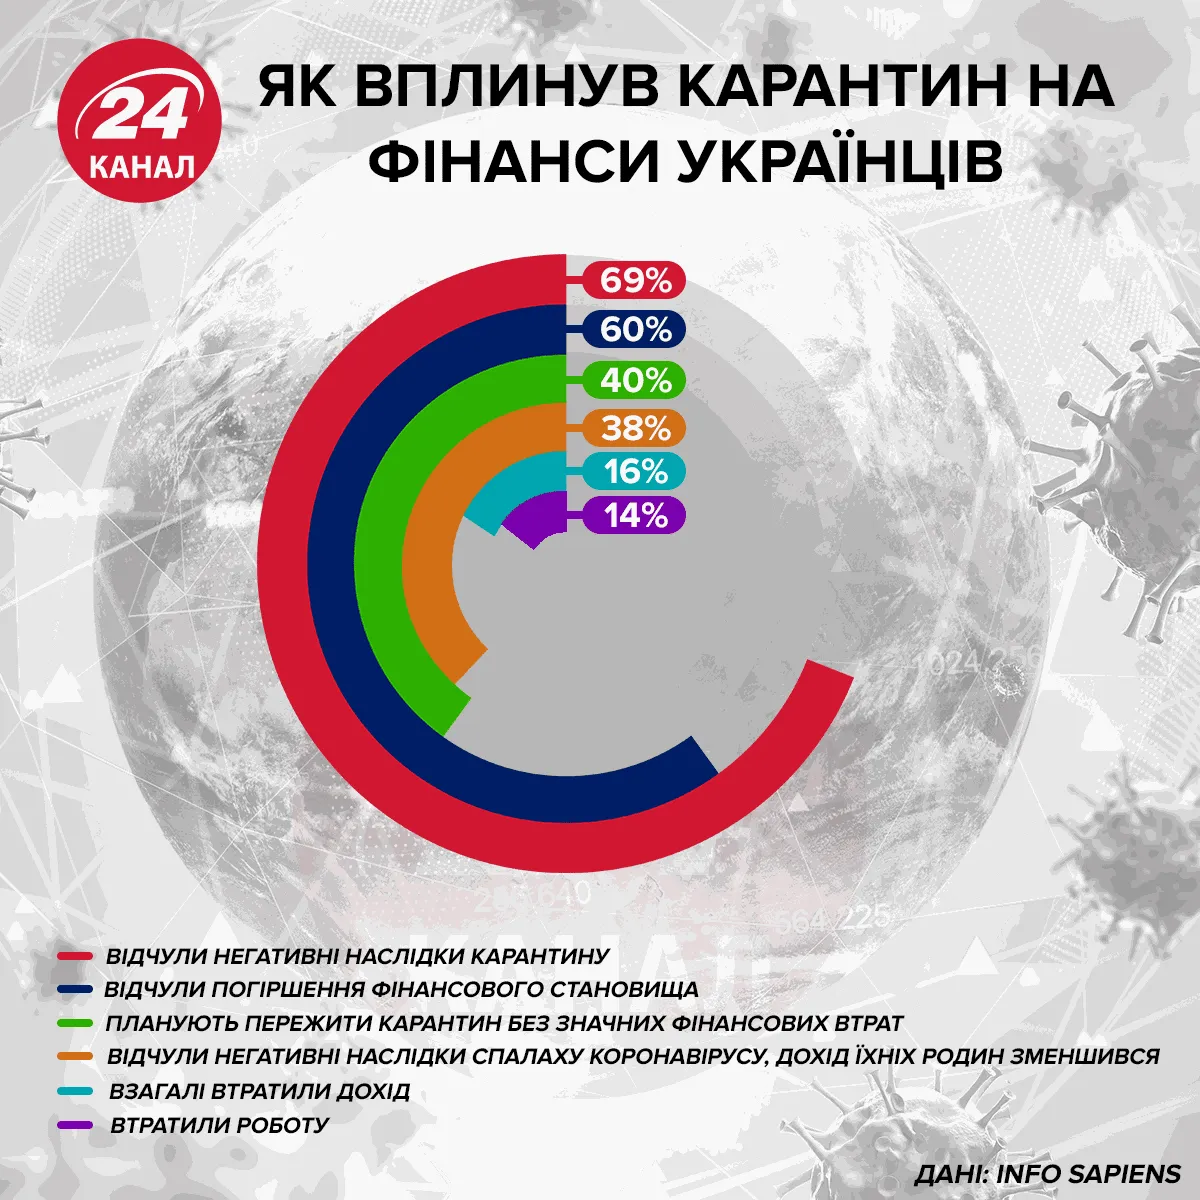 Как повлиял карантин на финансы украинцев  Инфографика 24 канала